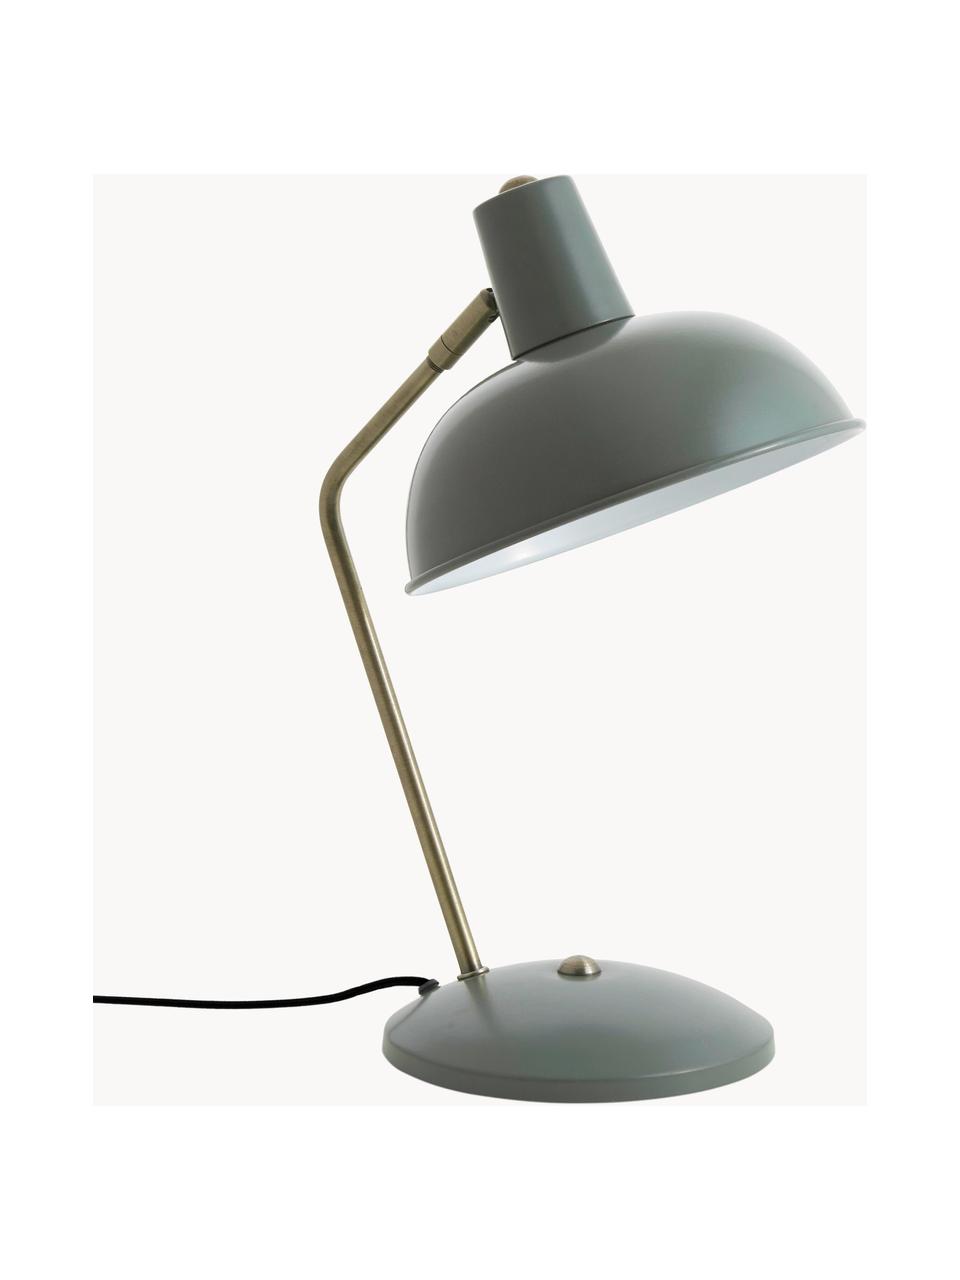 Retro-Schreibtischlampe Hood, Lampenschirm: Metall, lackiert, Lampenfuß: Metall, lackiert, Grün, Goldfarben, B 20 x H 38 cm